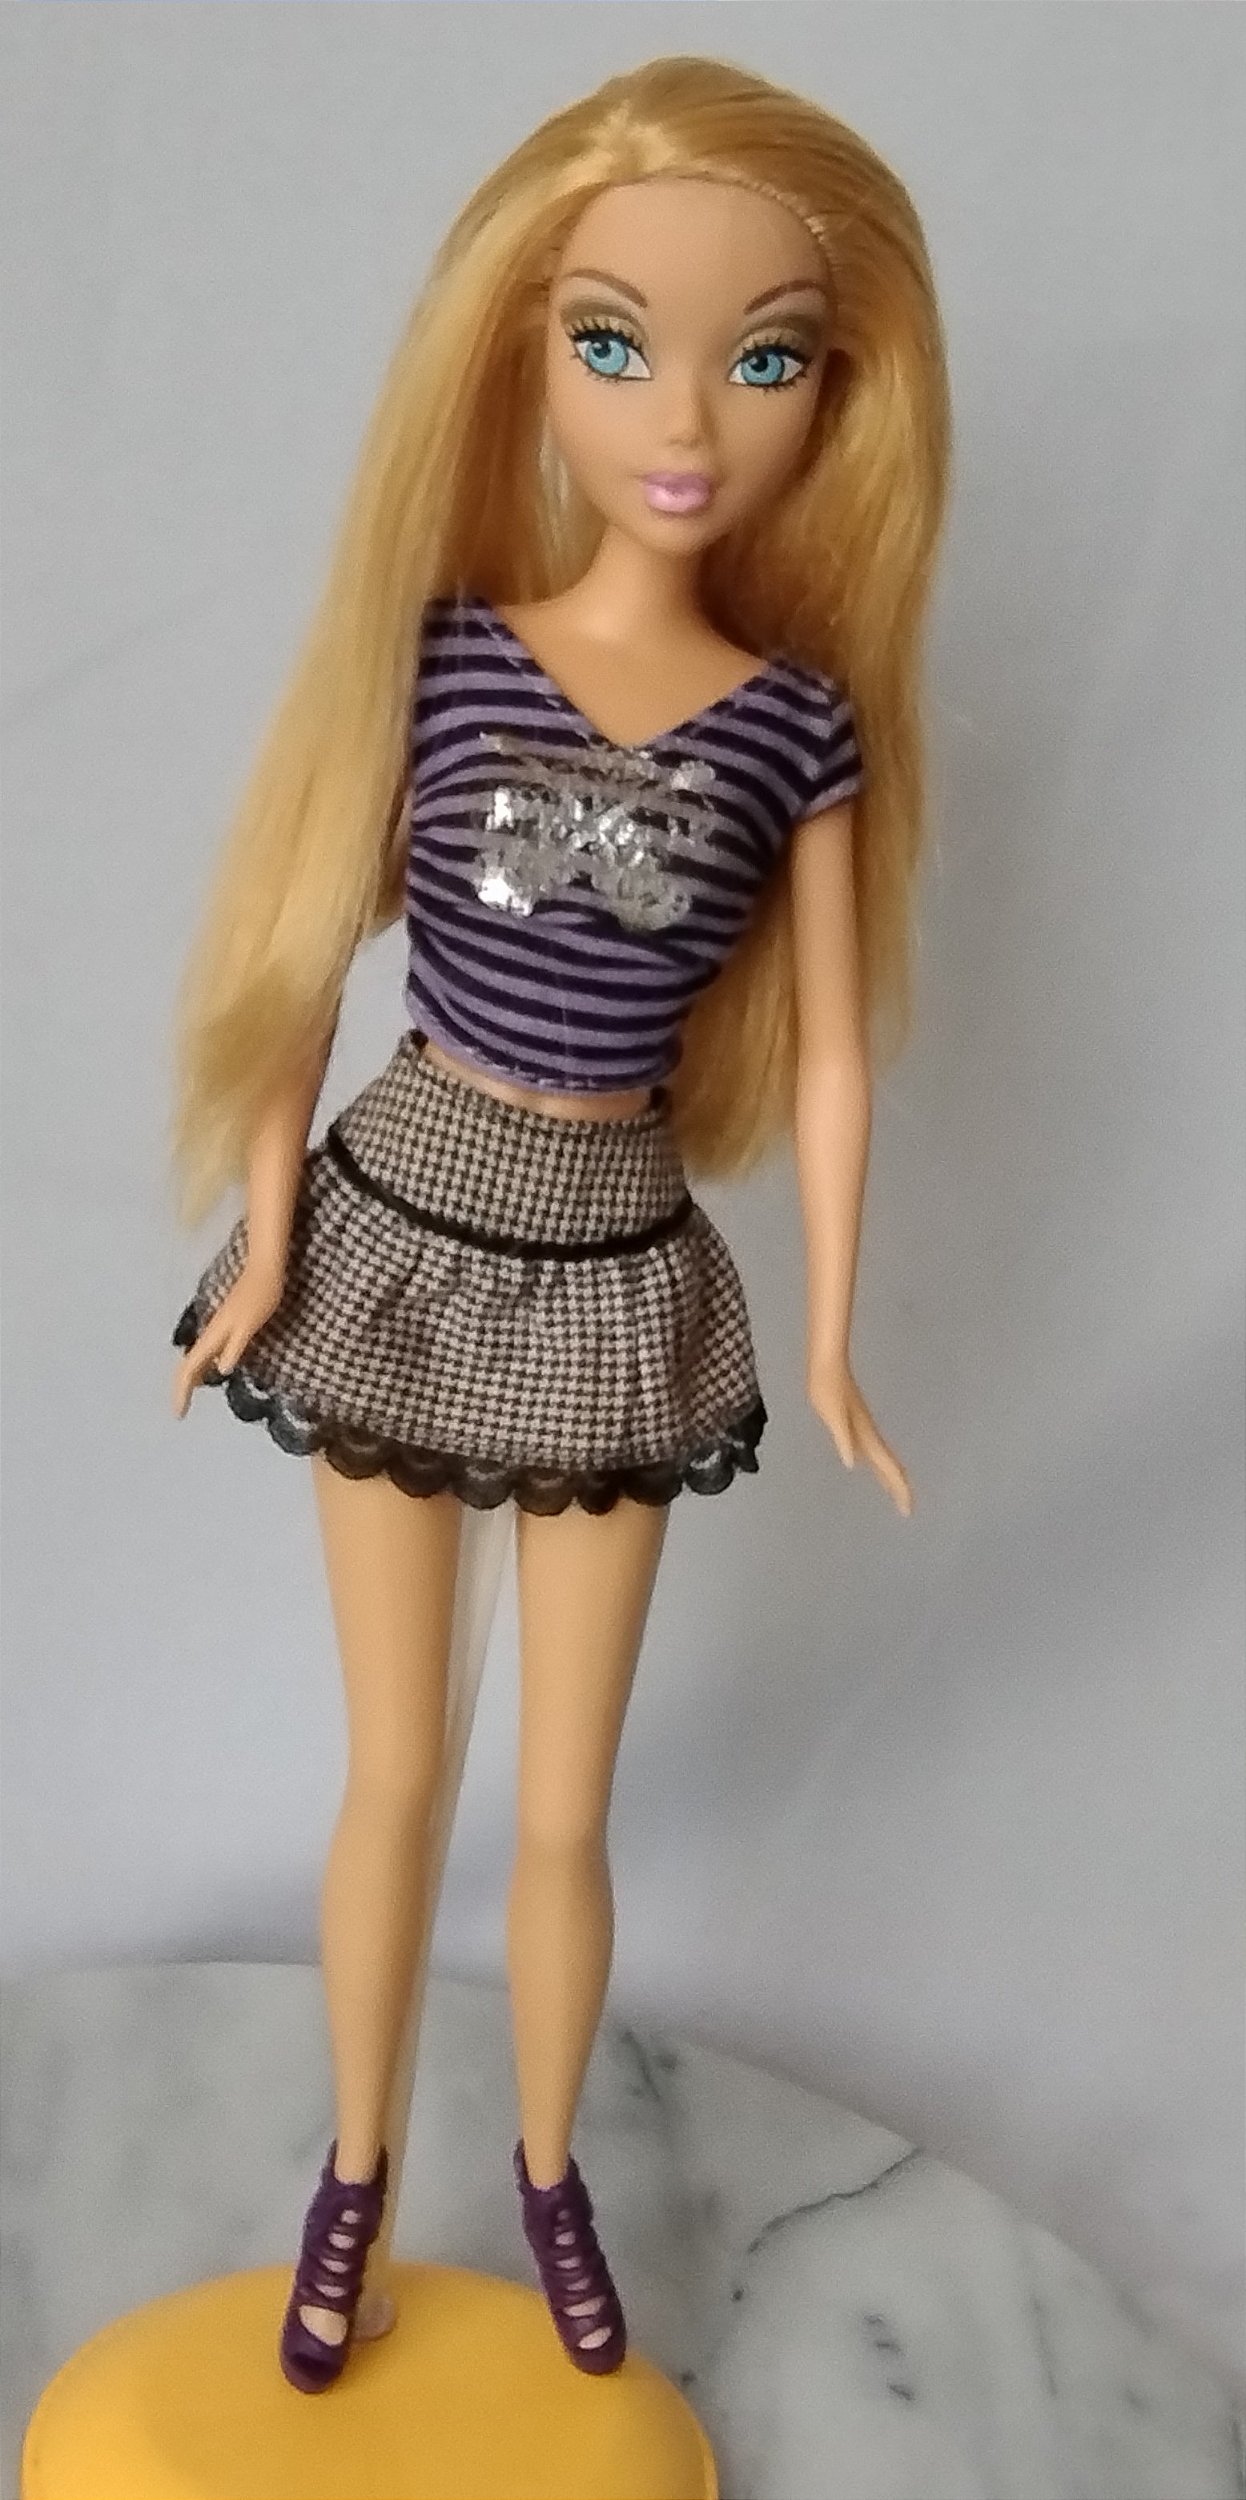 Barbie my scene Kennedy com danos - Taffy Shop - Brechó de brinquedos